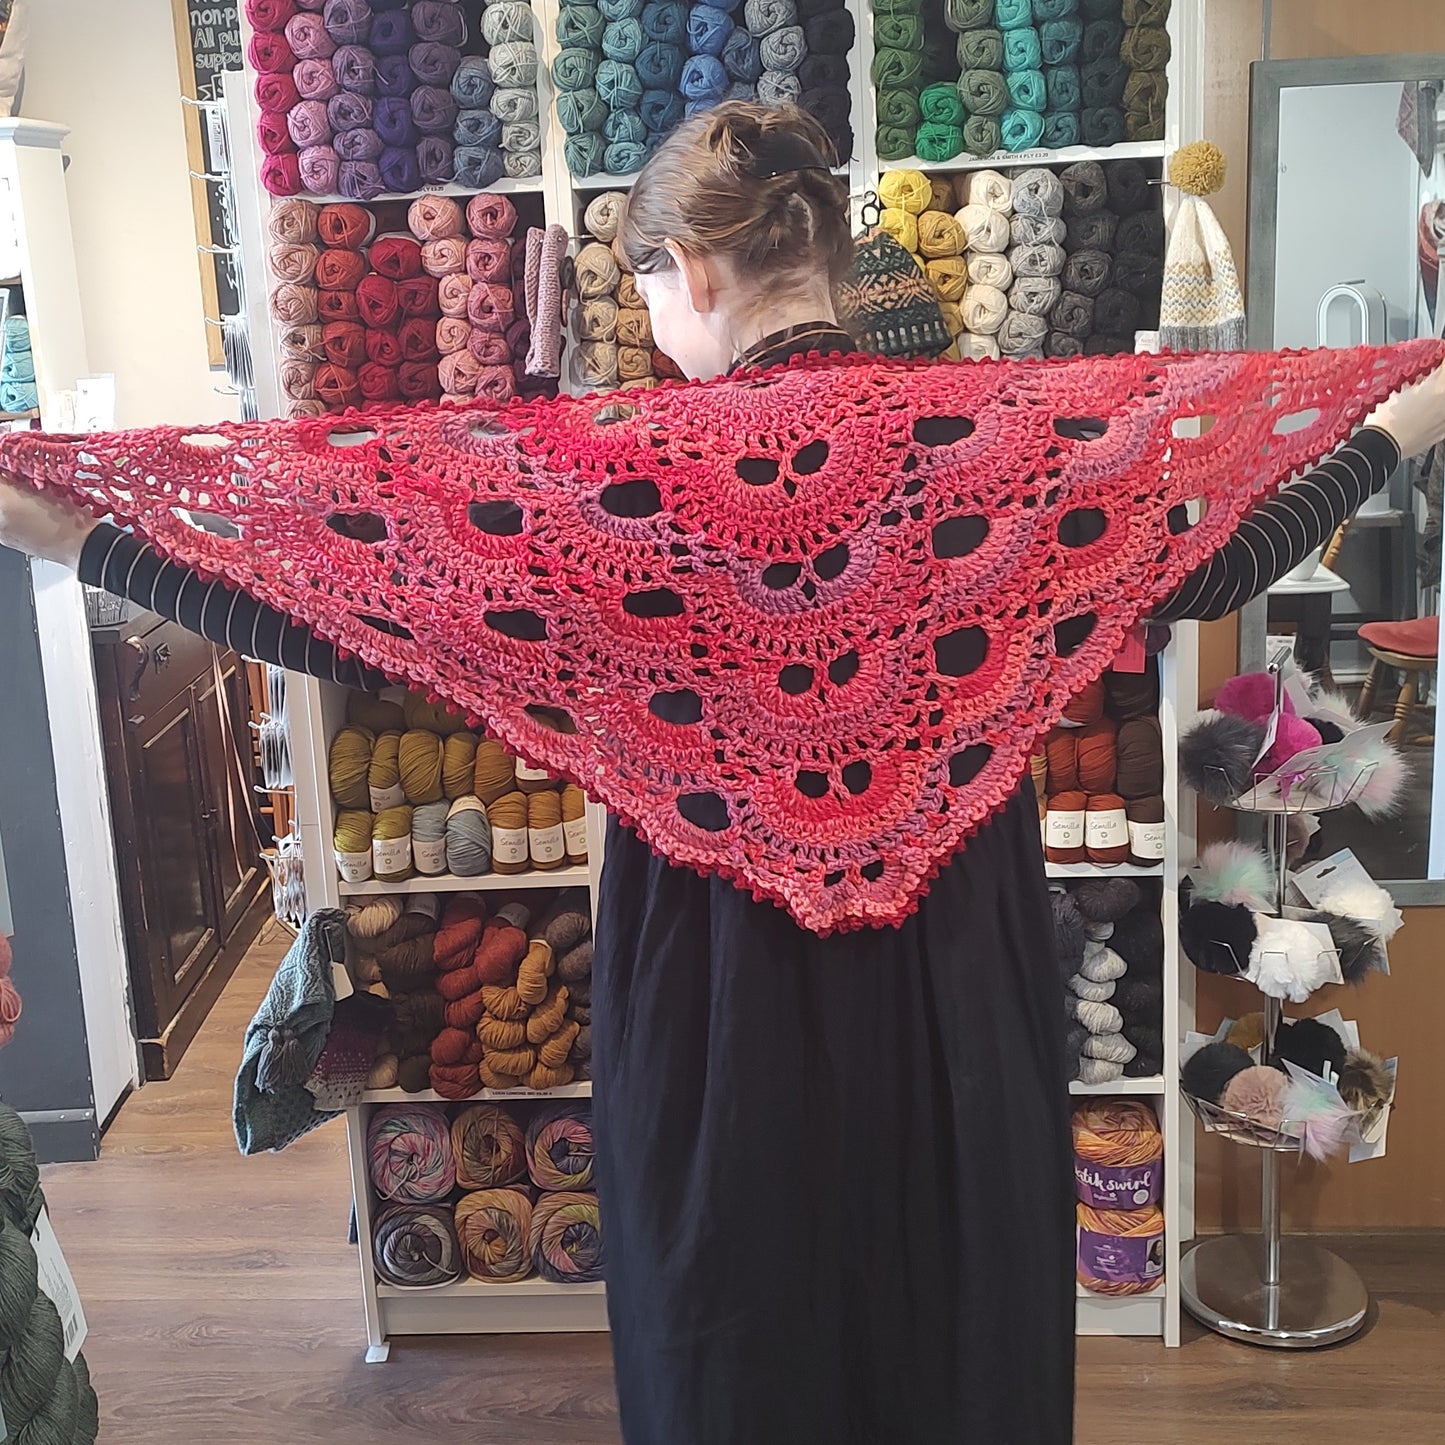 Crocheted Shawl - Virus Shawl pinks and reds